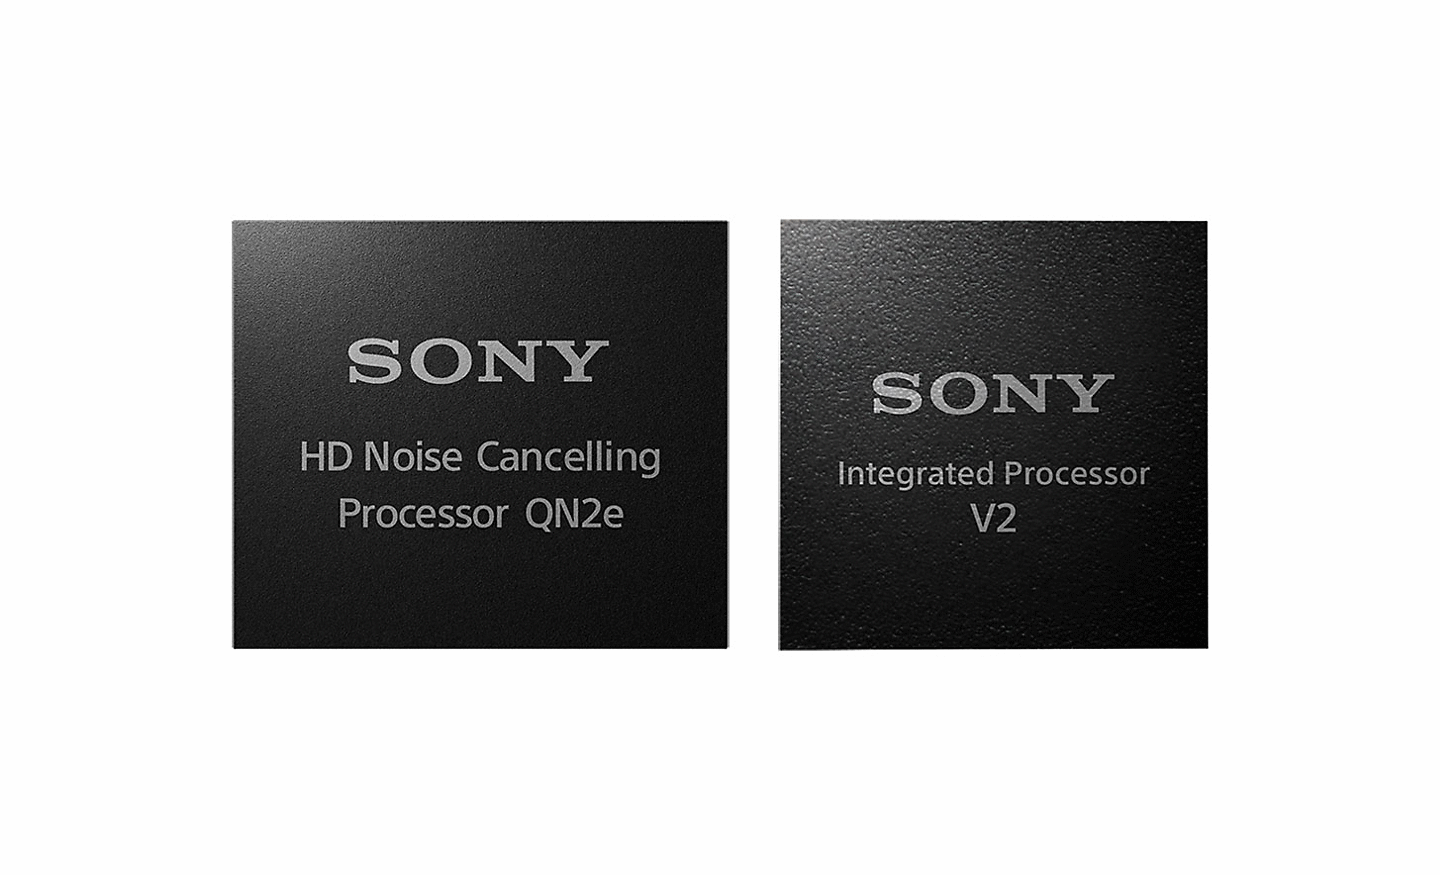 Imagen de dos procesadores; el de la izquierda es el procesador de noise cancelling en HD y el de la derecha el procesador integrado V2